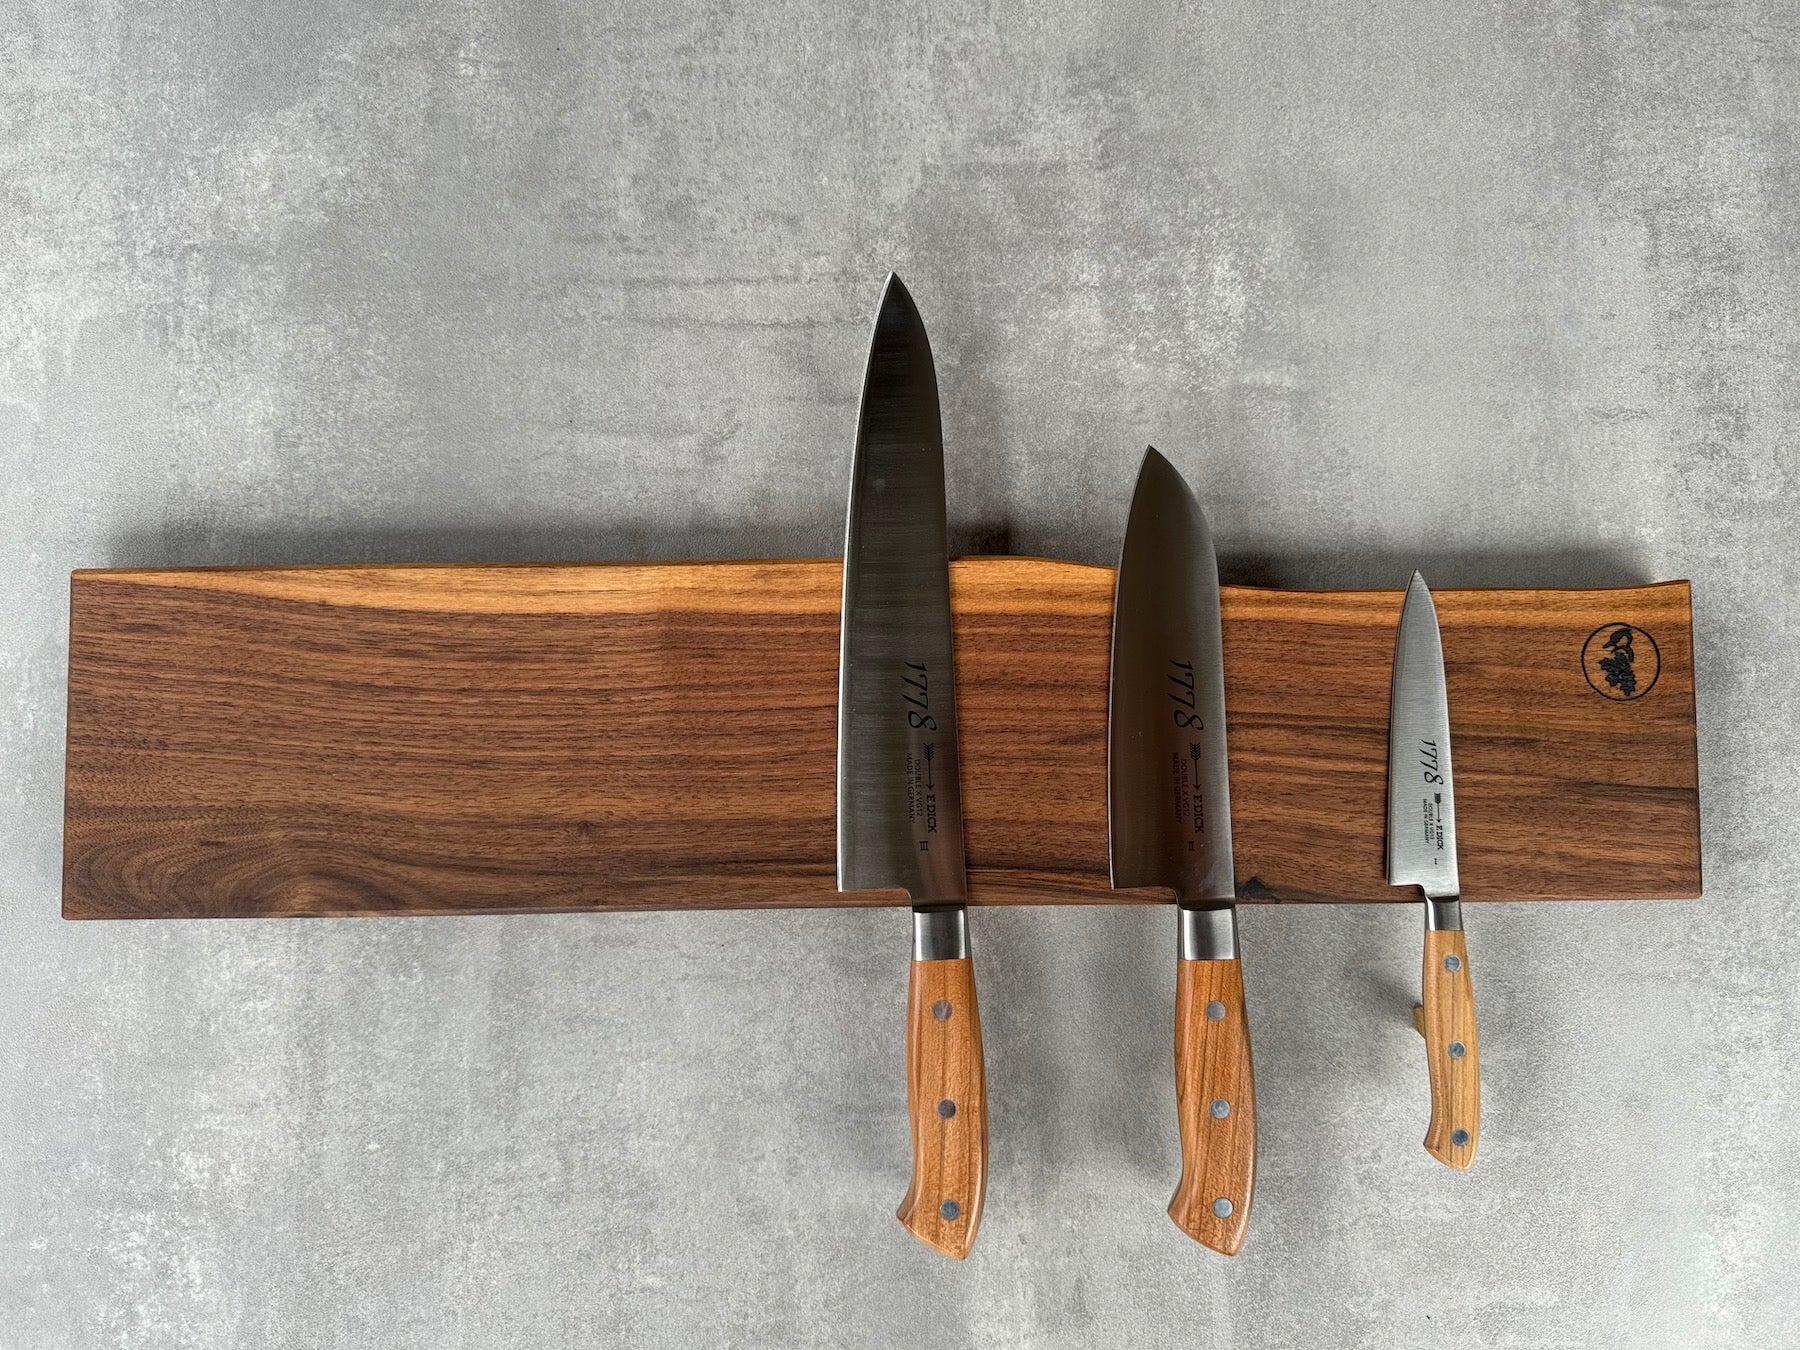 Magnetische Messerleiste für 9 Messer aus massivem Nussbaum mit einer Baumkante. Dekoriert mit 3 Kochmessern von Dick 1778.